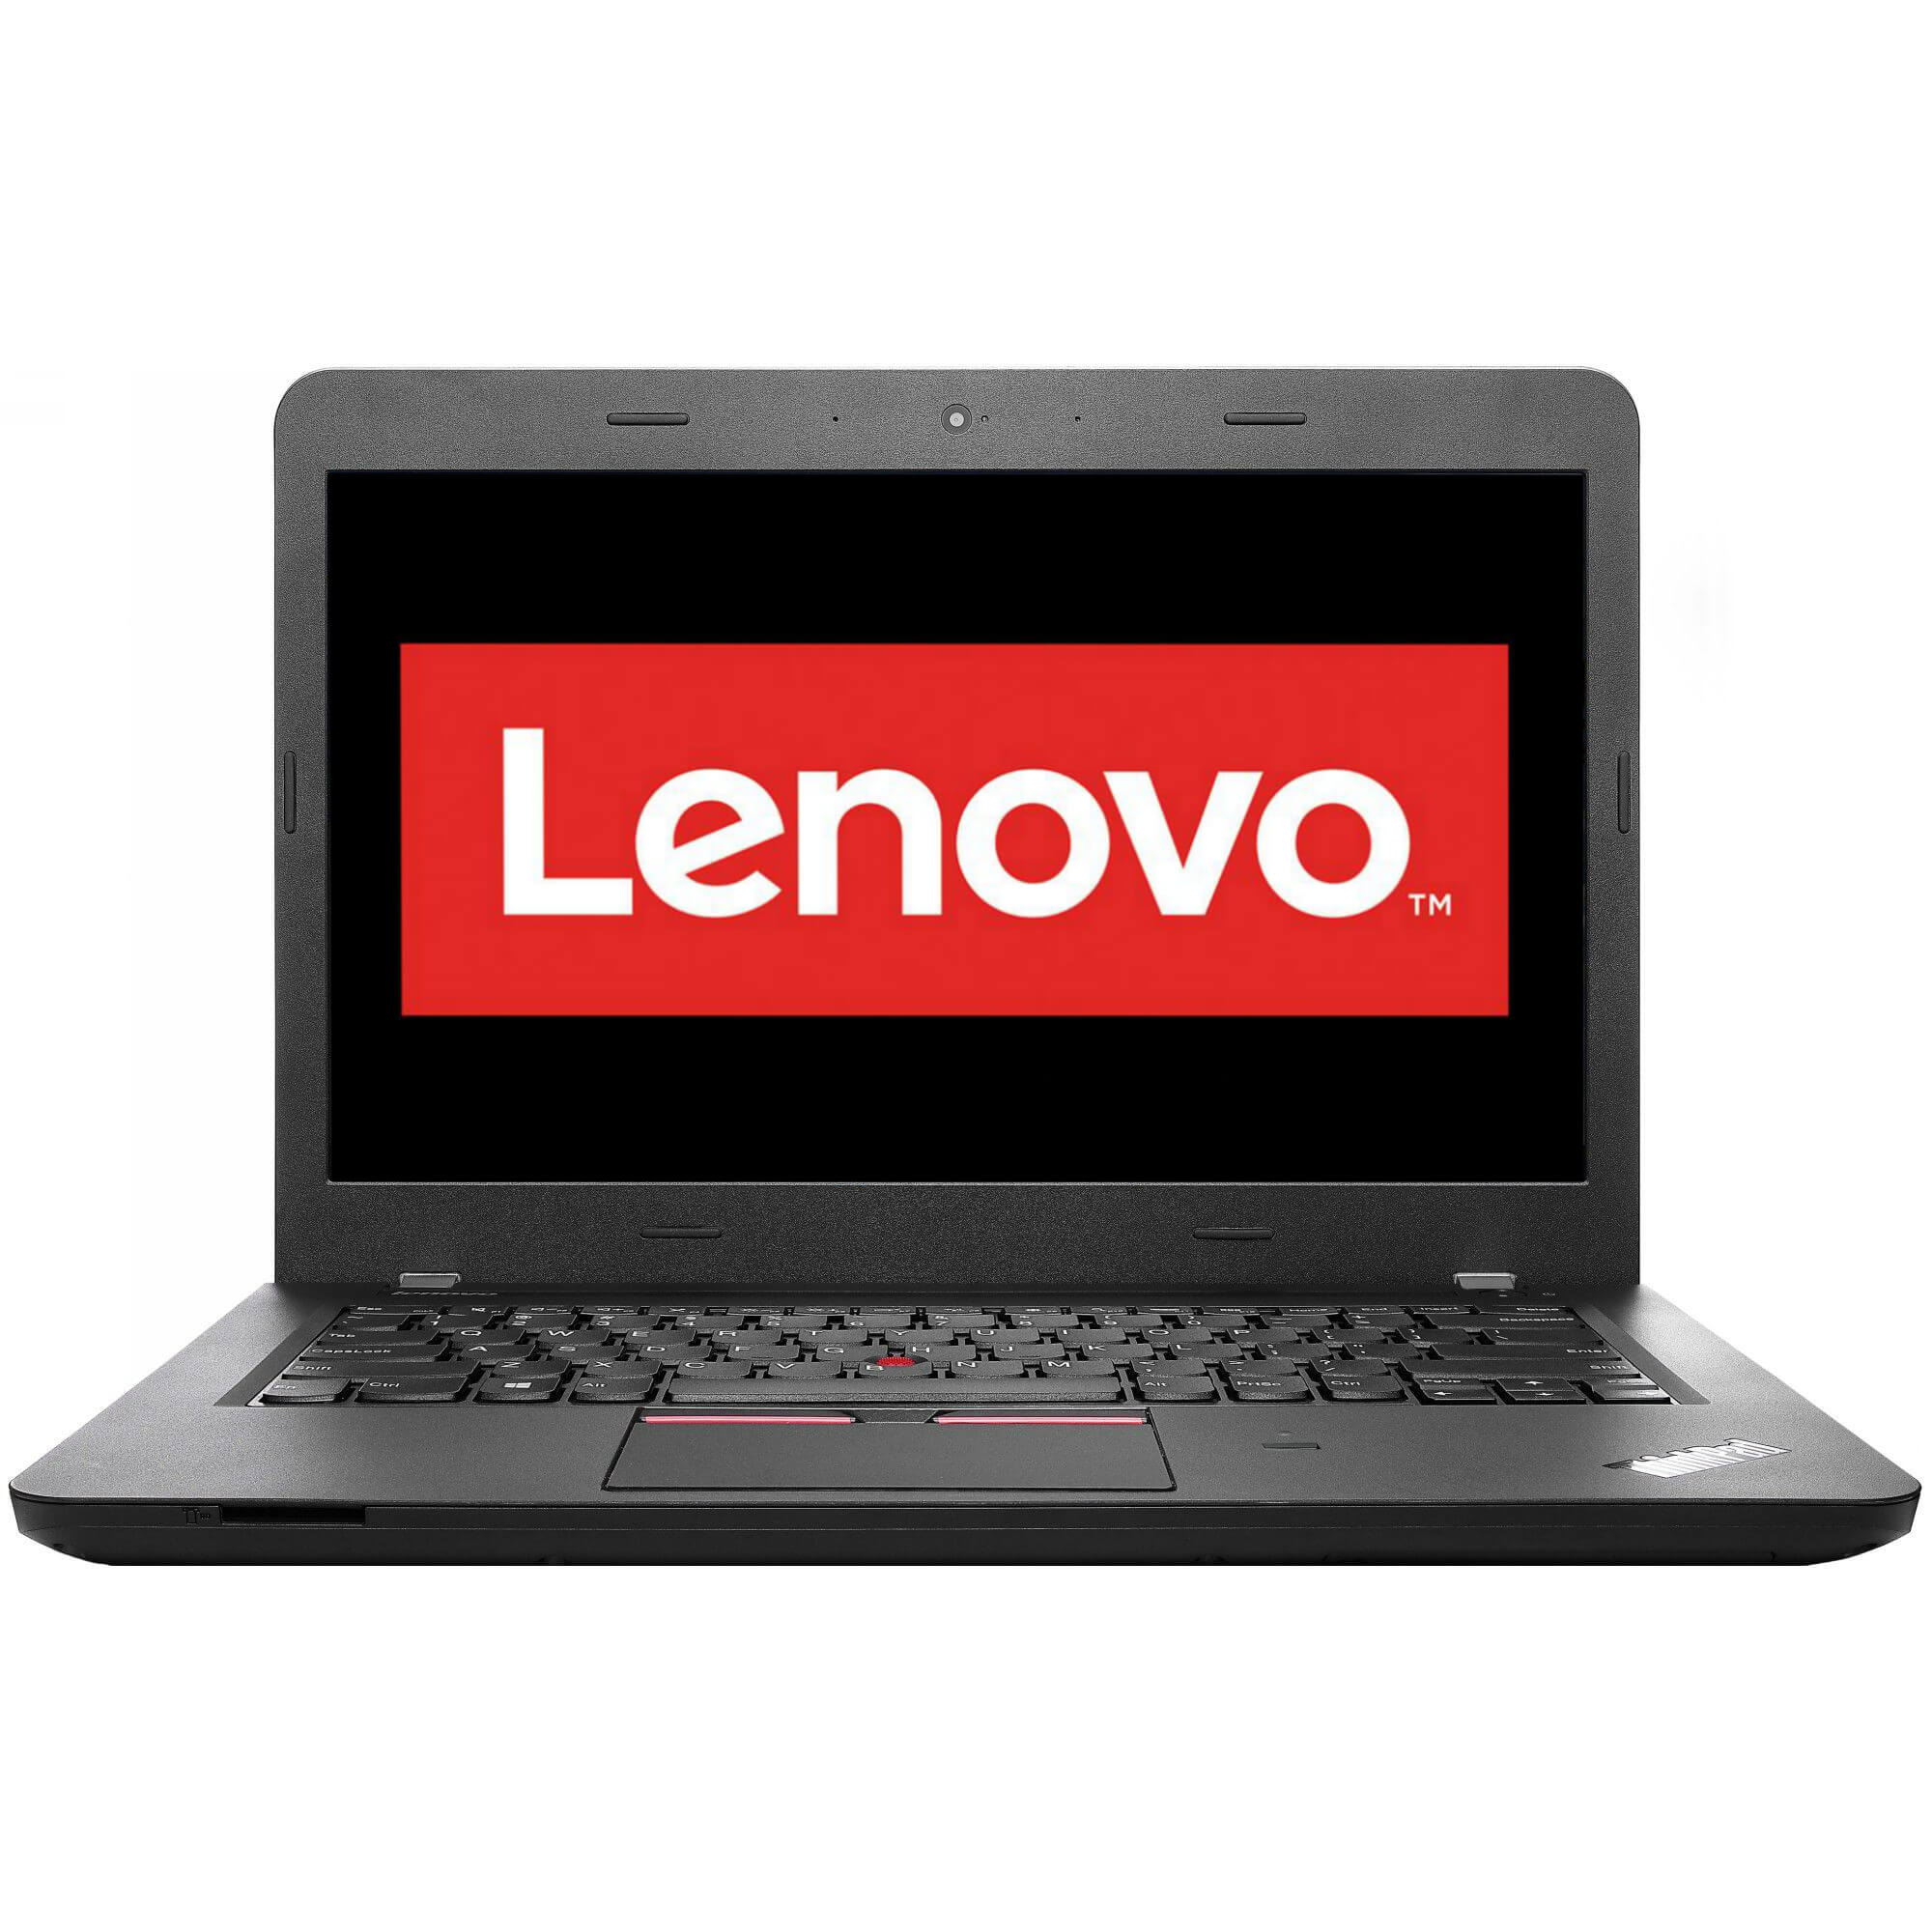  Laptop Lenovo ThinkPad E460, Intel Core i3-6100U, 4GB DDR3, HDD 500GB, Intel HD Graphics, Free DOS 